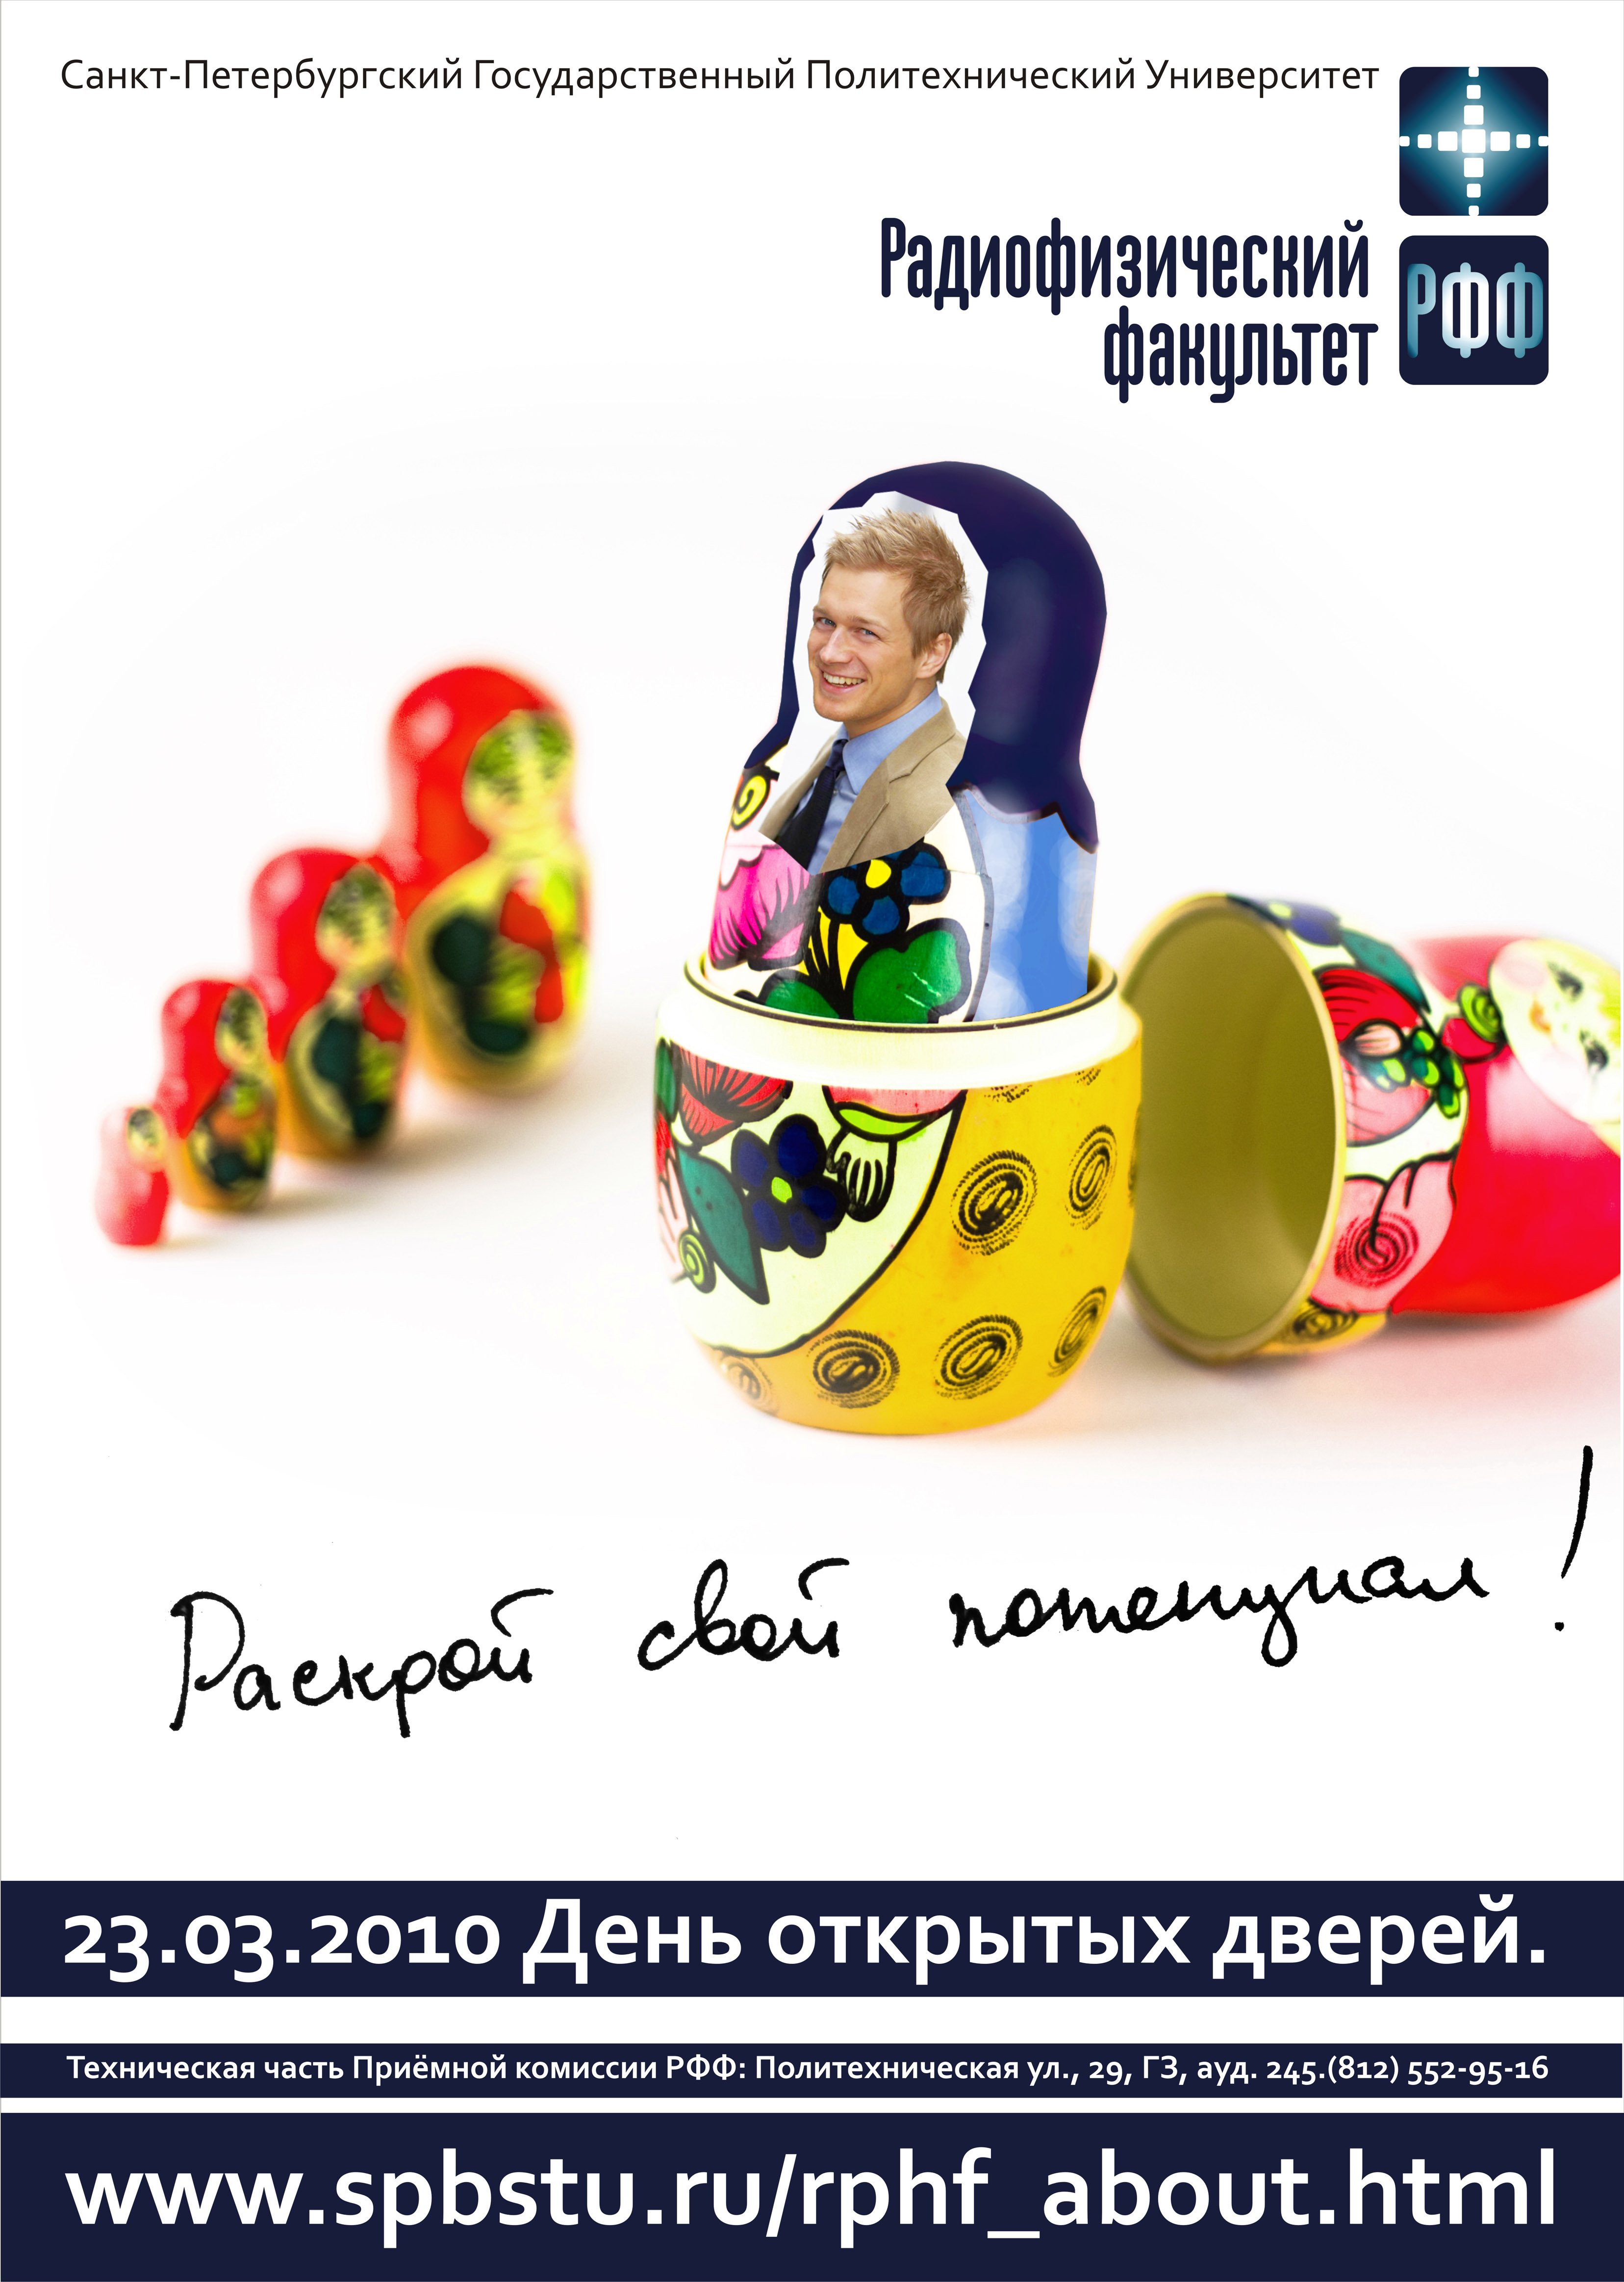 Рекламный плакат в поддержку Радиофизического ф-та СПбГПУ